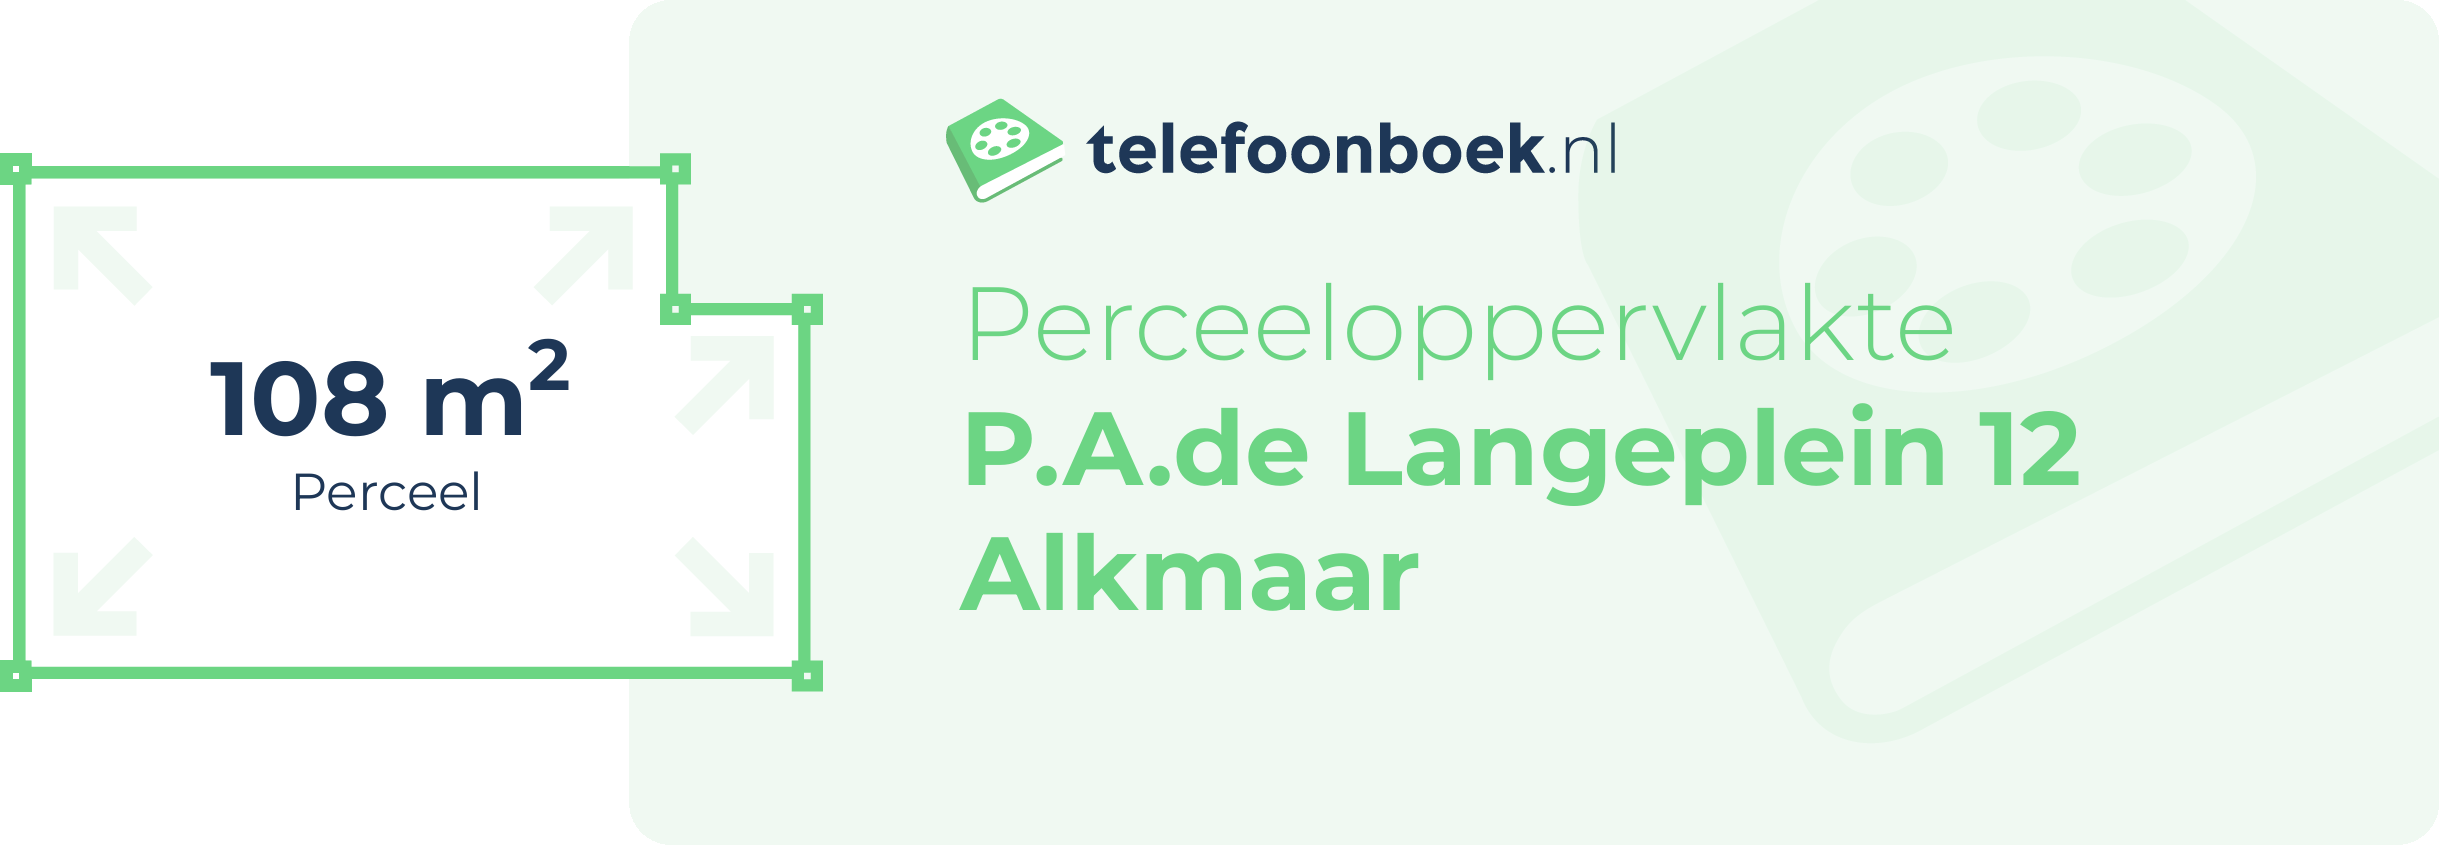 Perceeloppervlakte P.A.de Langeplein 12 Alkmaar